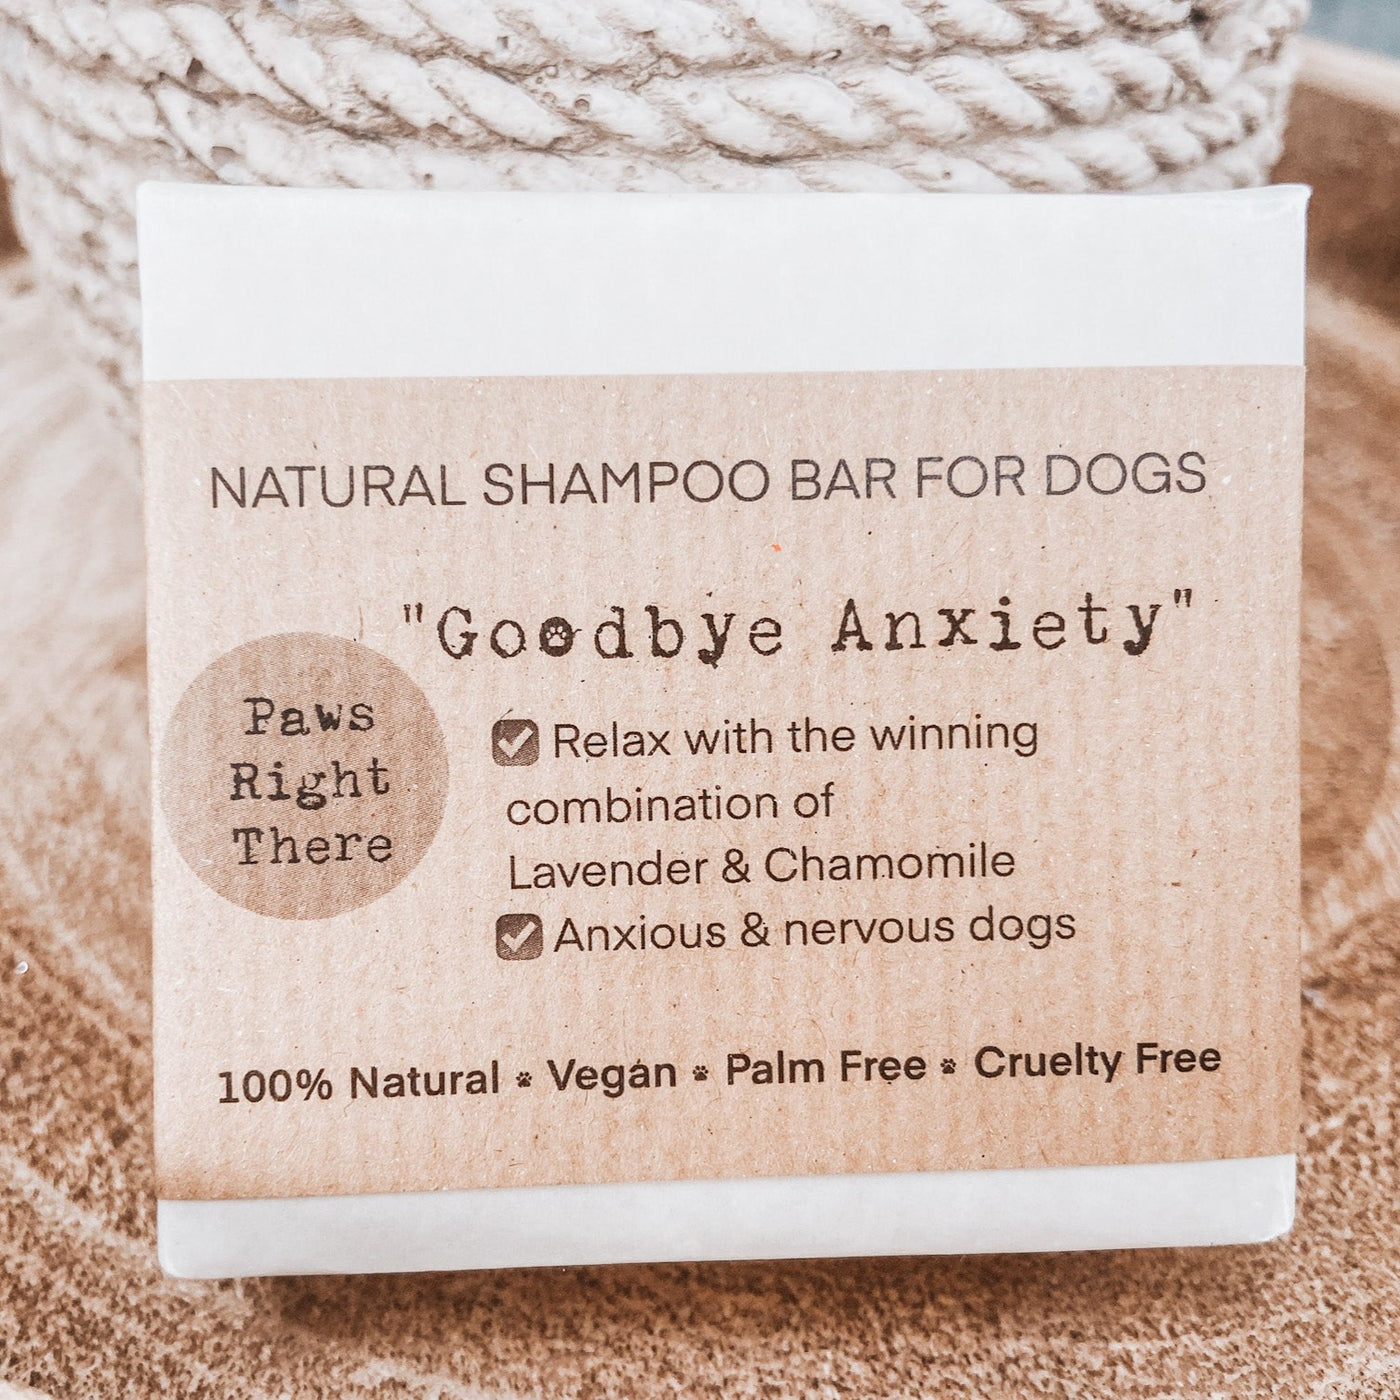 Goodbye Anxiety Natural Dog Shampoo Bar 100% natural ingredients, vegan-friendly, no palm oil.